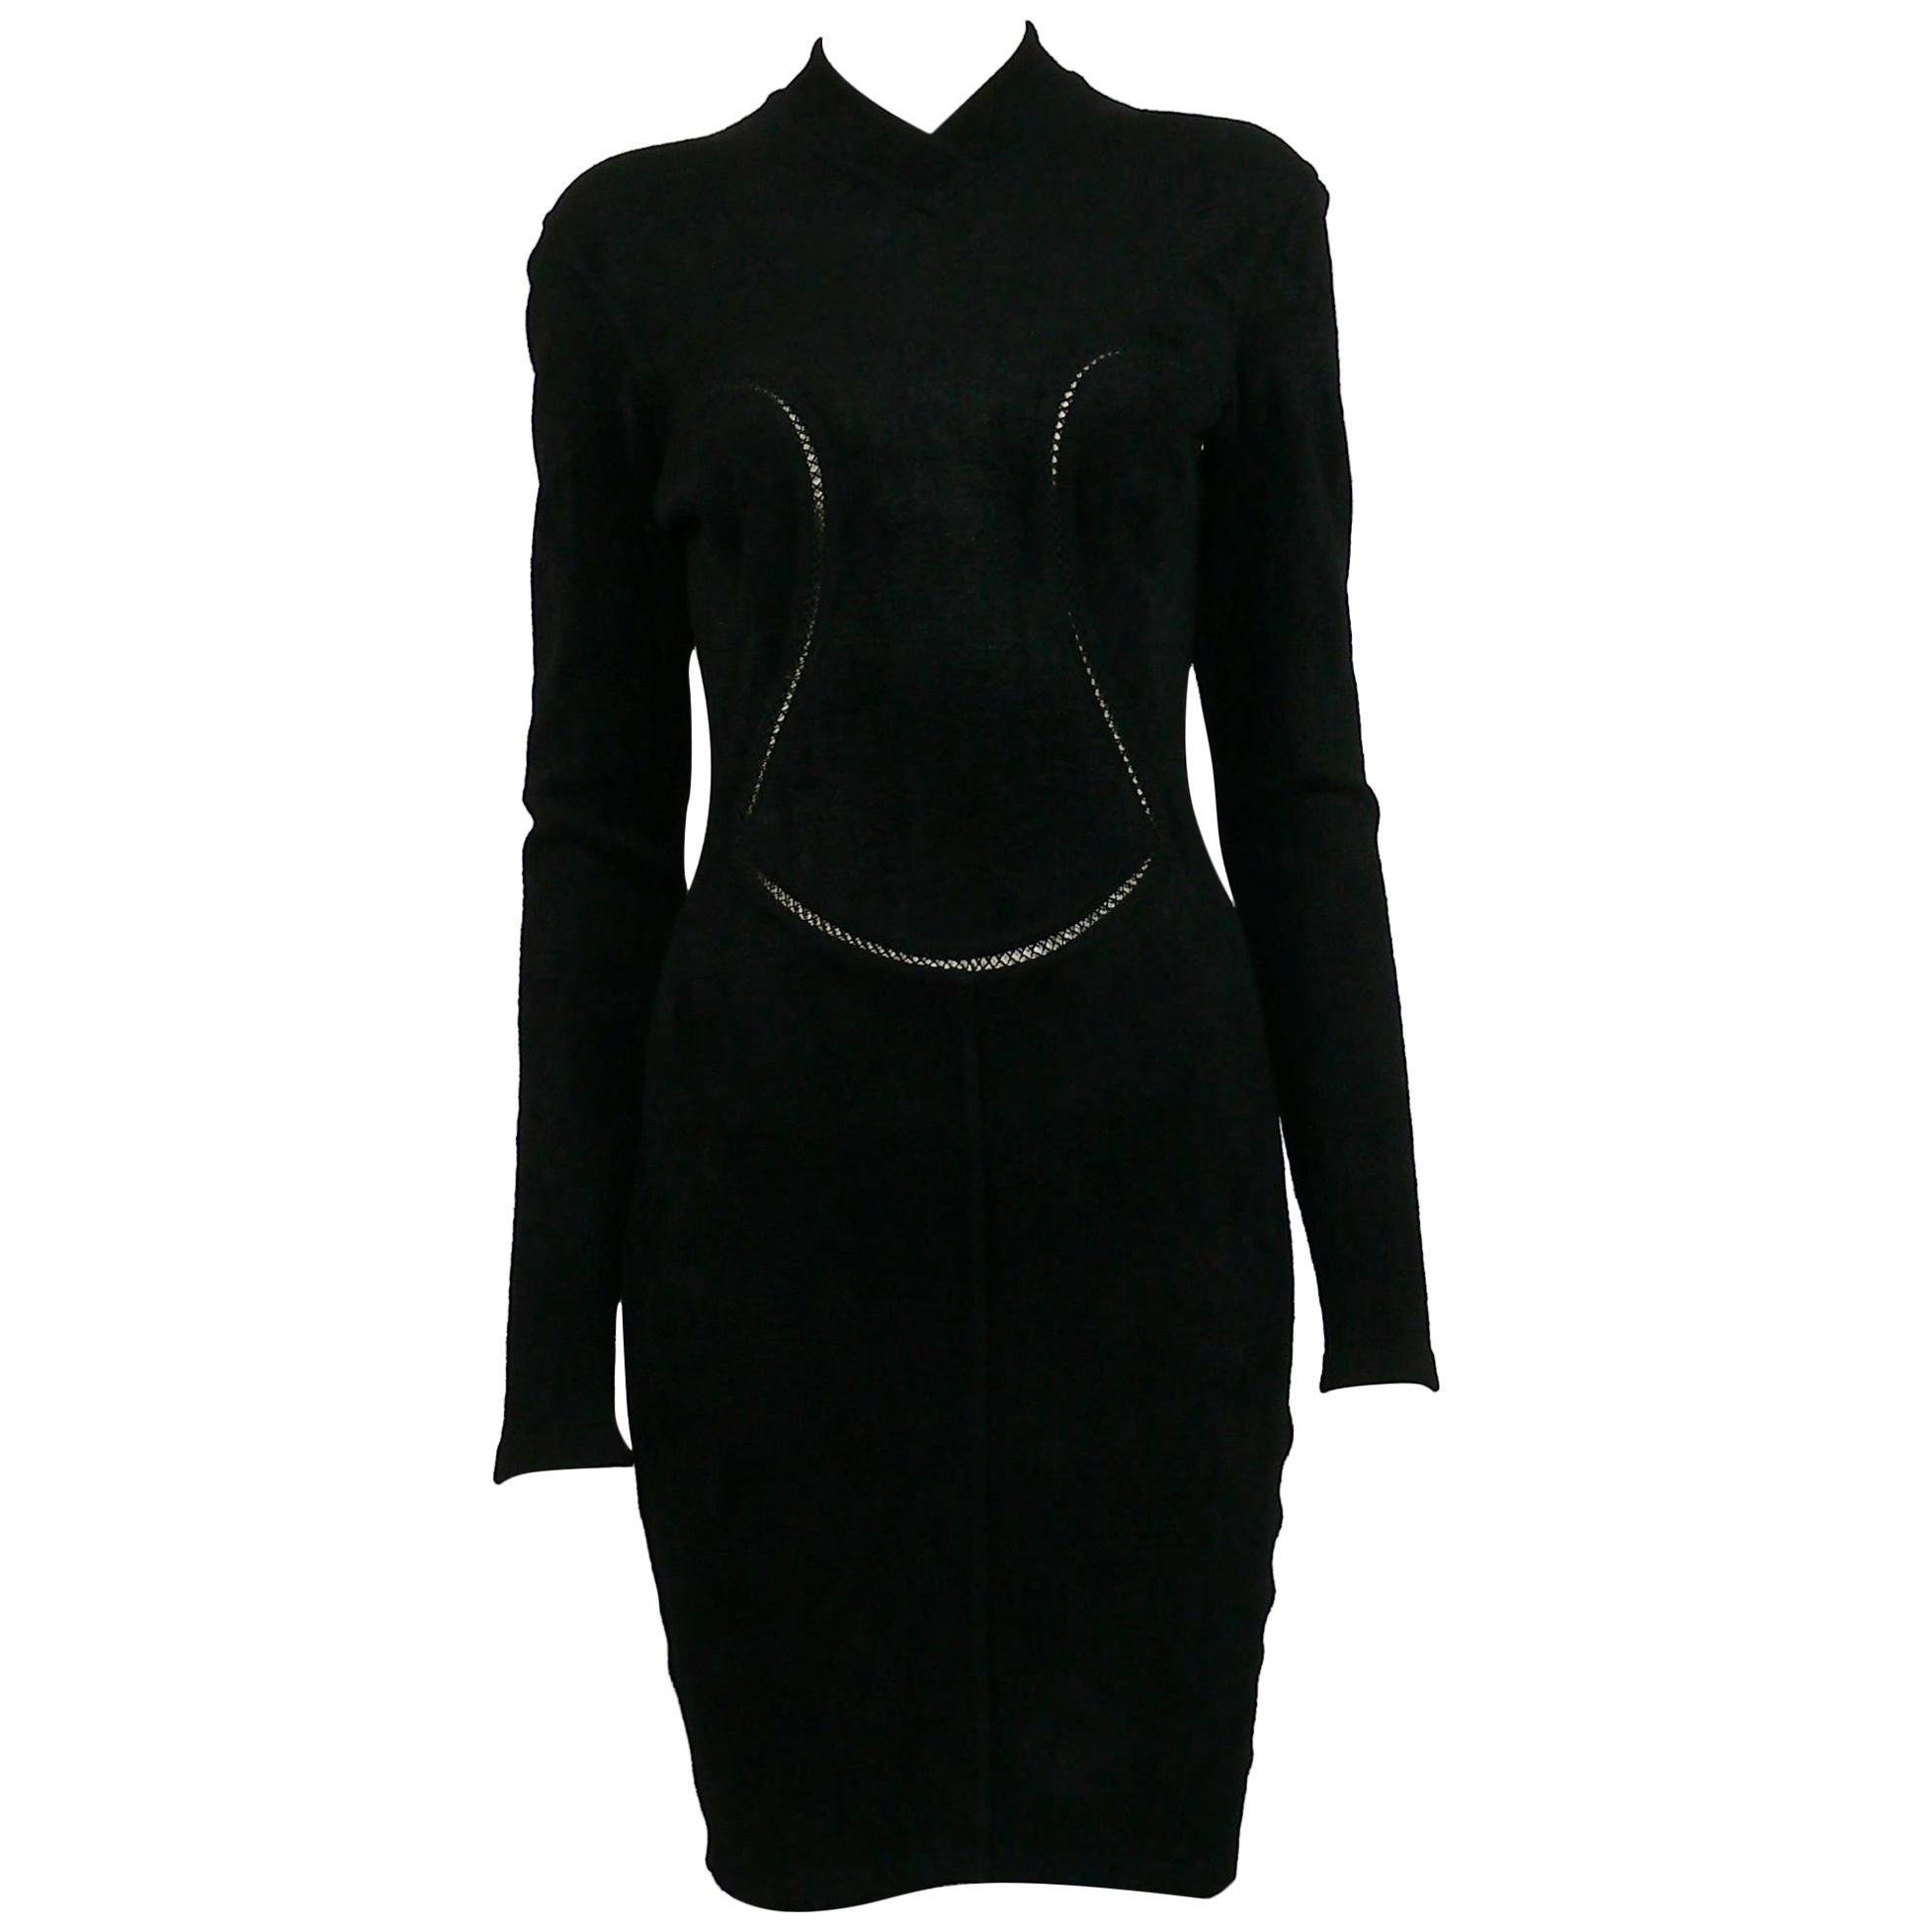 Azzedine Alaia Vintage Bodycon Knit Black Dress with Openwork Details F/W 1991